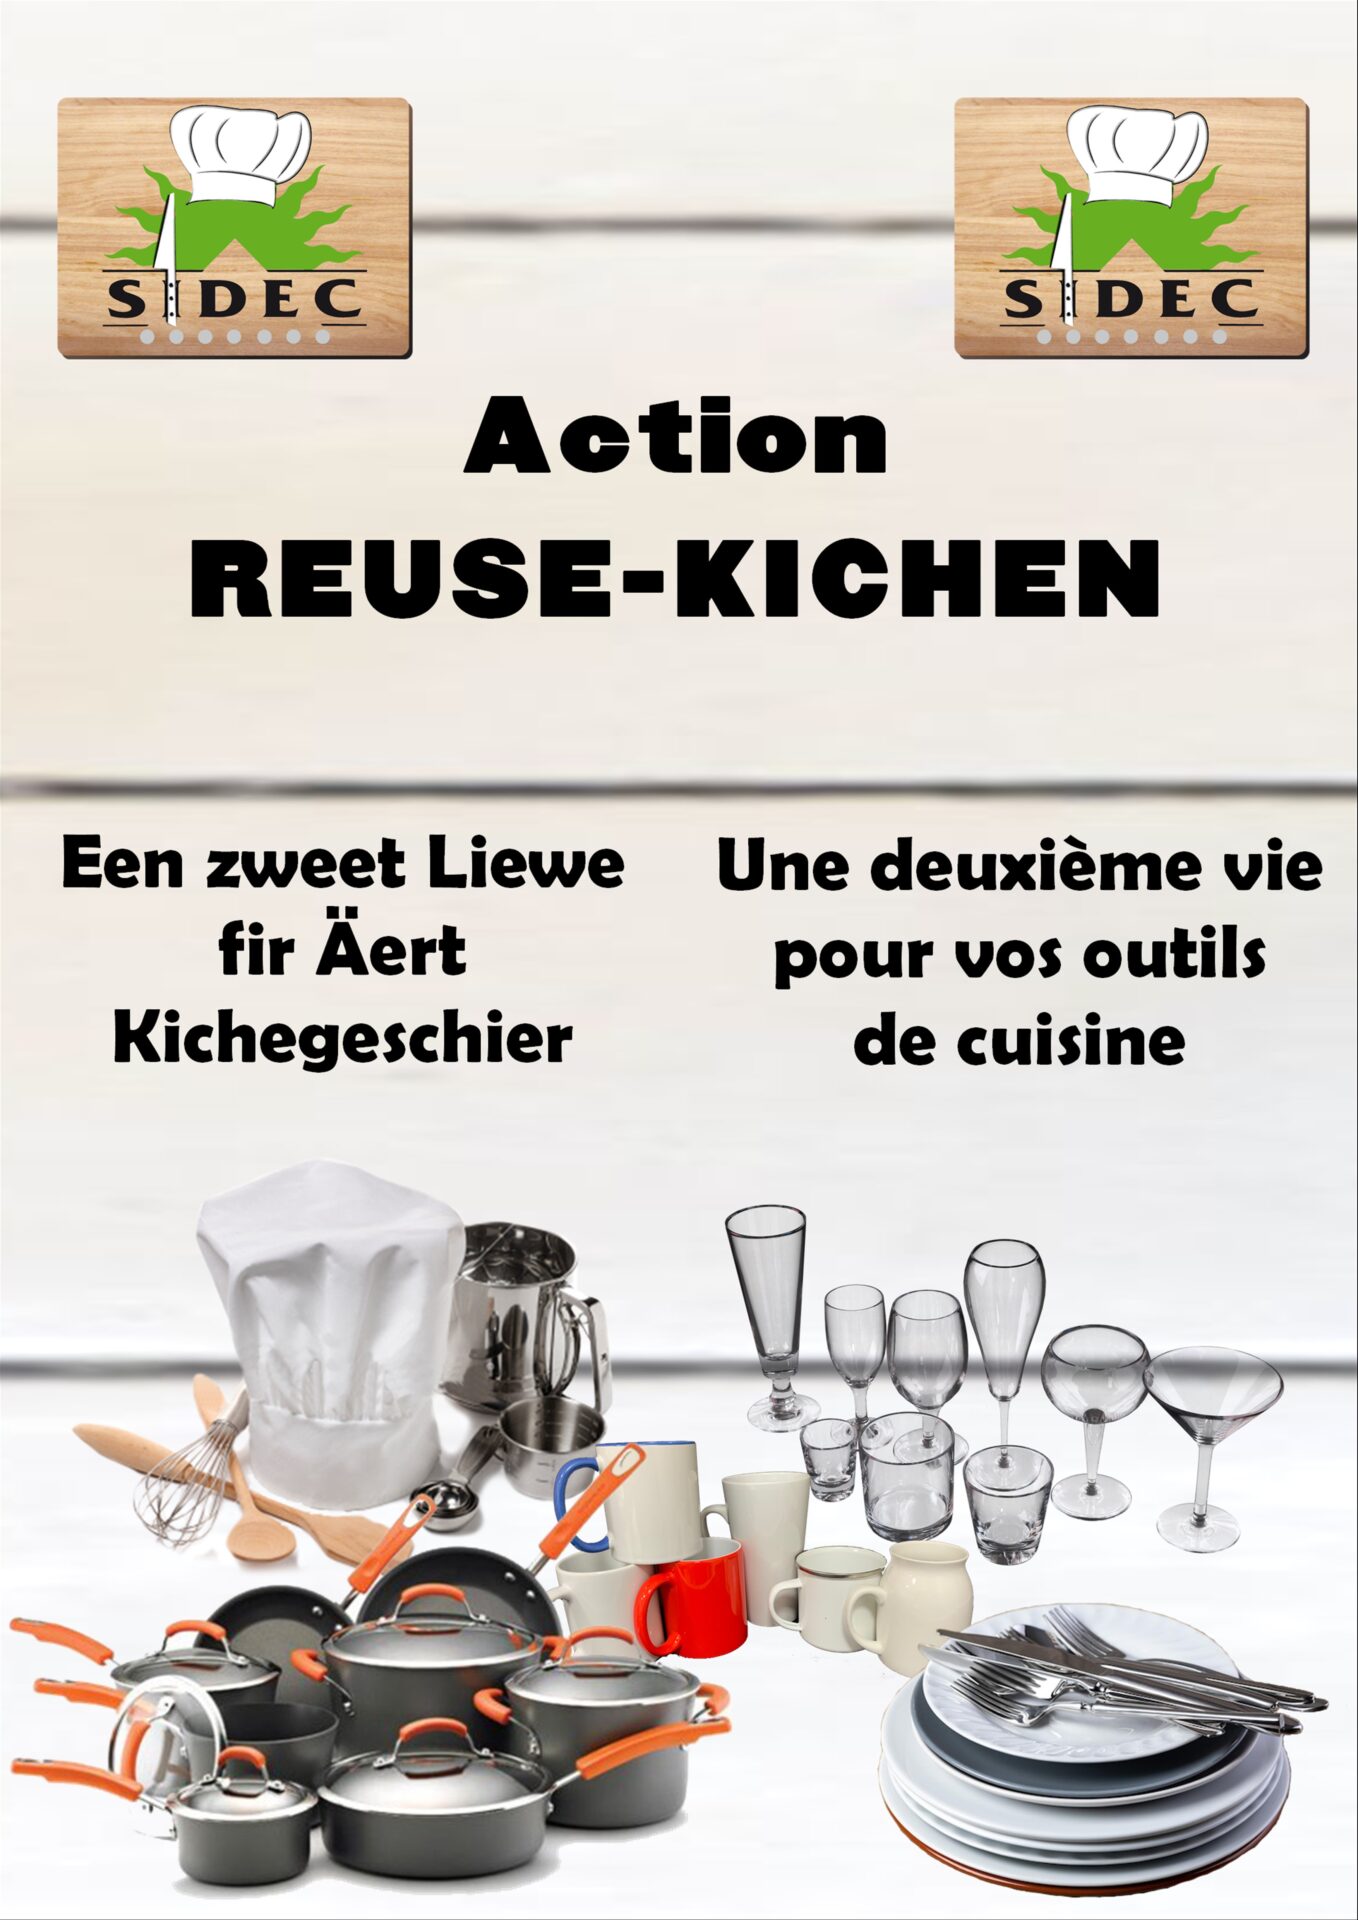 SIDEC: action "ReUse Kichen"